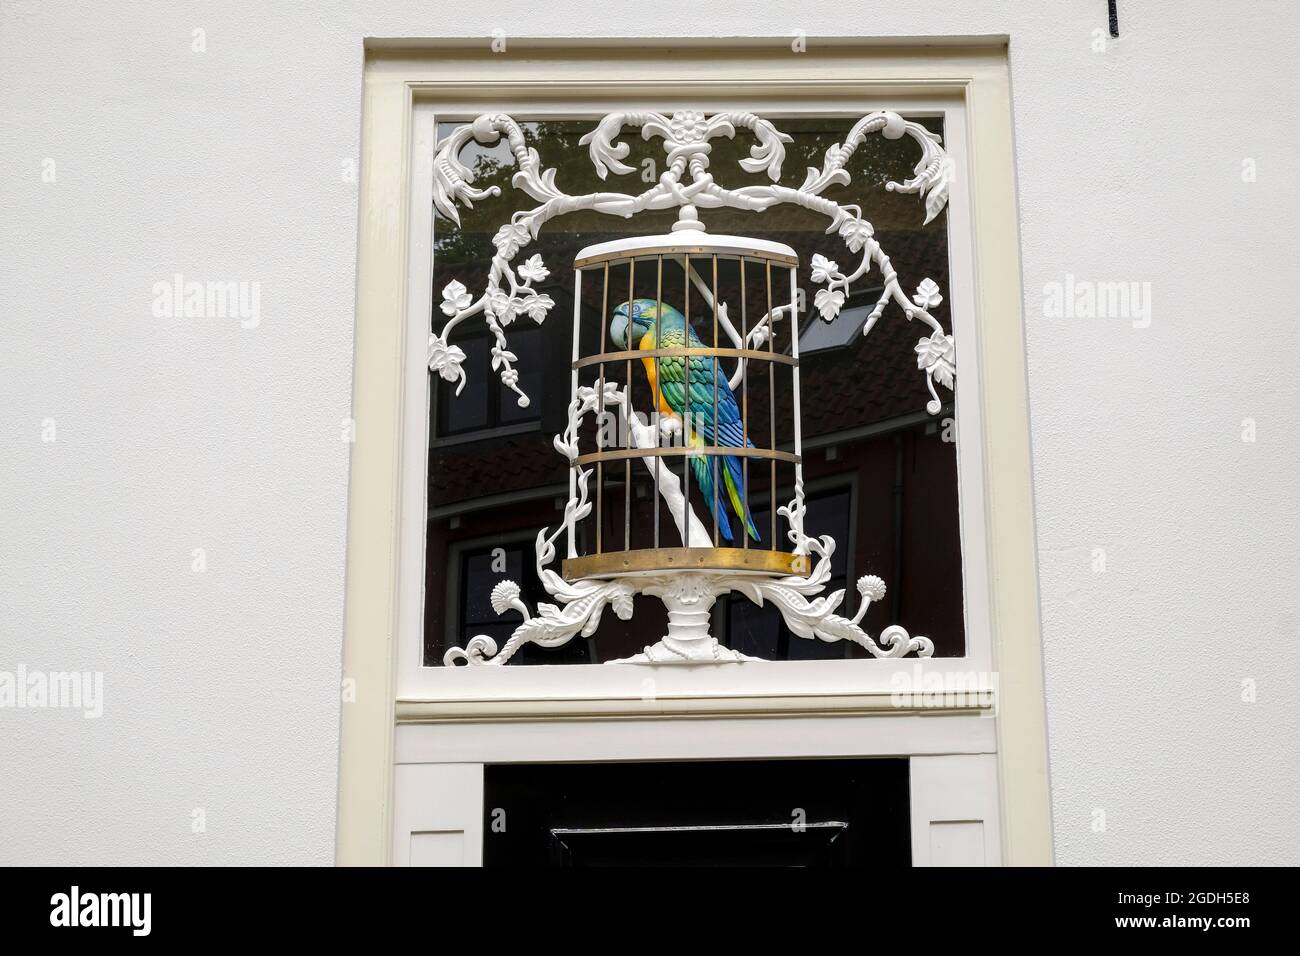 NLD, Niederlande, Overijssel, Deventer, 12.08.2021: Papageienfigur ueber der Eingangstuer des Hauses Bergstraat 19/21 einer ehemaligen Bierbrauerei im Foto de stock